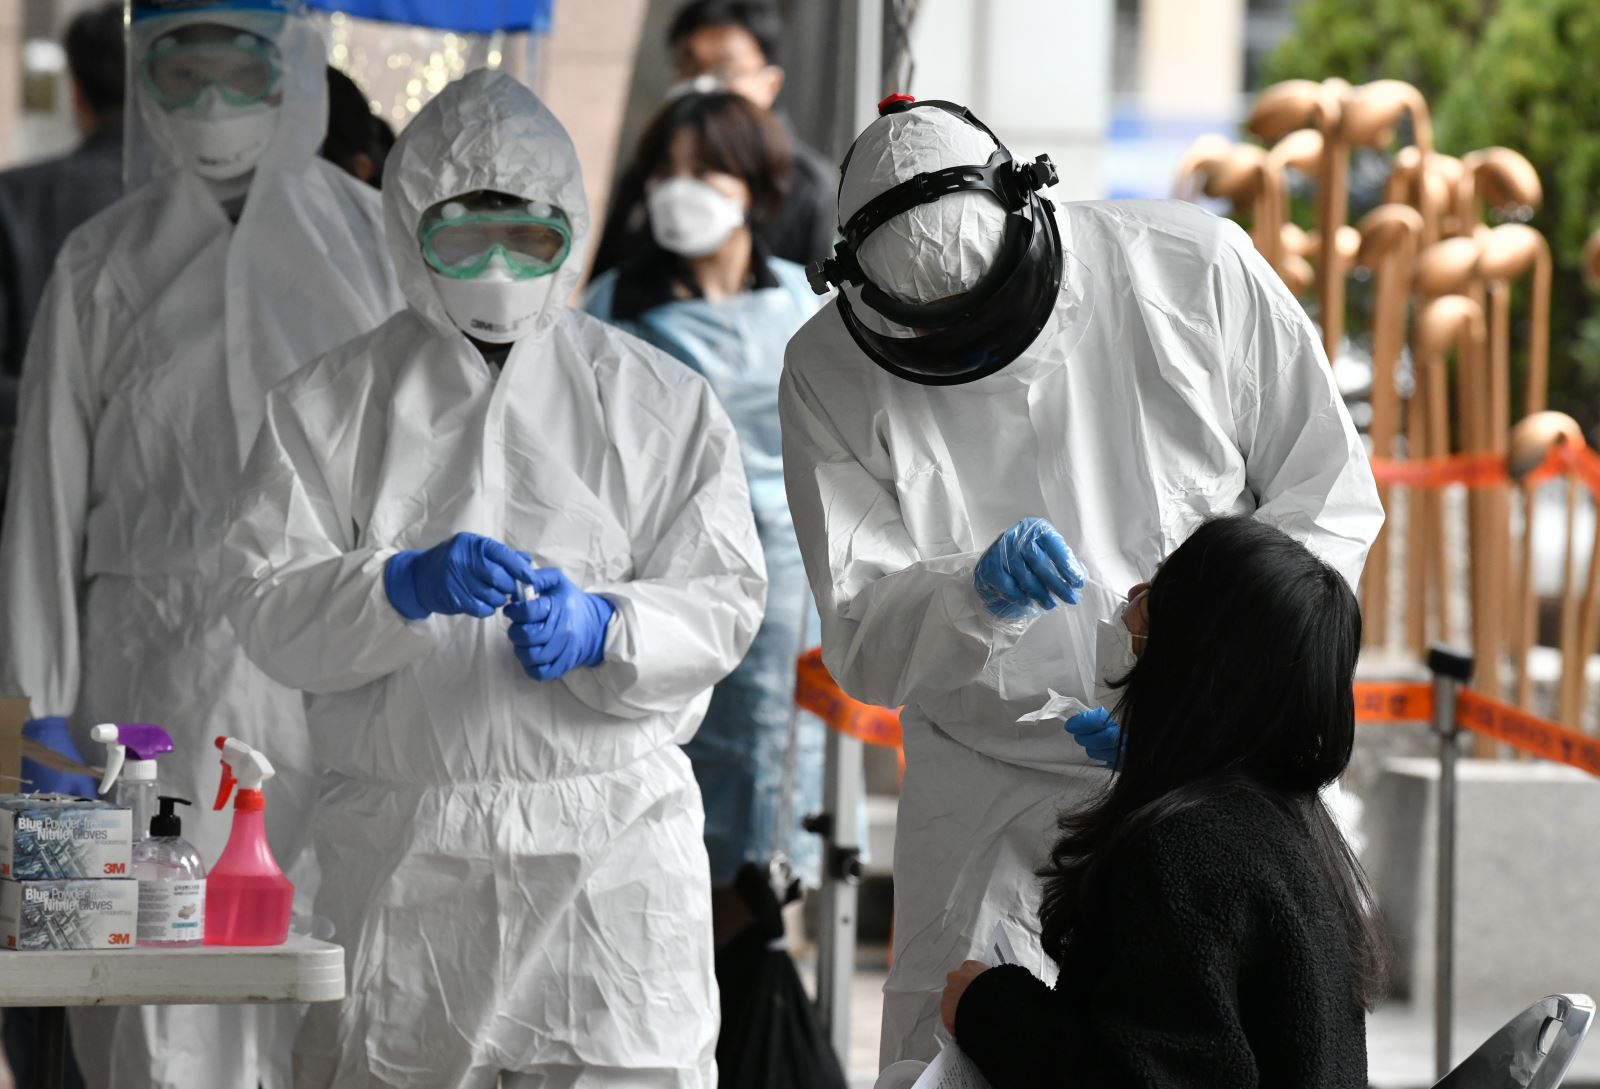 Nhân viên y tế Hàn Quốc lấy mẫu bệnh phẩm của các nhân viên bị nghi nhiễm Covid-19 tại một tòa nhà ở Seoul, nơi phát hiện 46 ca dương tính với virus SARS-CoV-2, ngày 10-3-2020. Ảnh: AFP/TTXVN